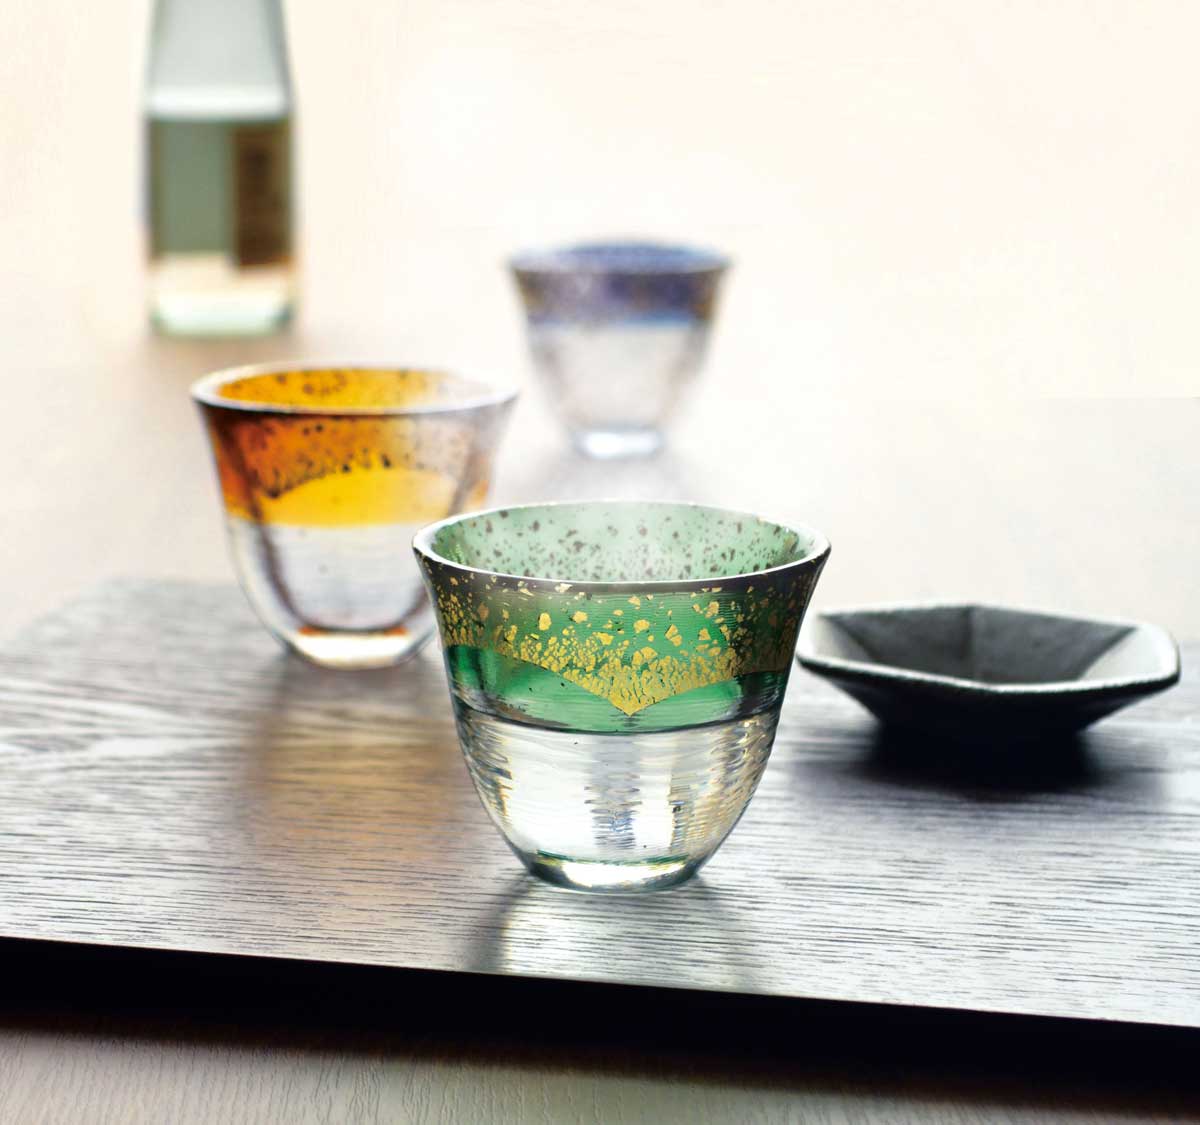 Foto de três copos de vidro transparente com borda colorida e pequeno recipiente preto sobre mesa de madeira.